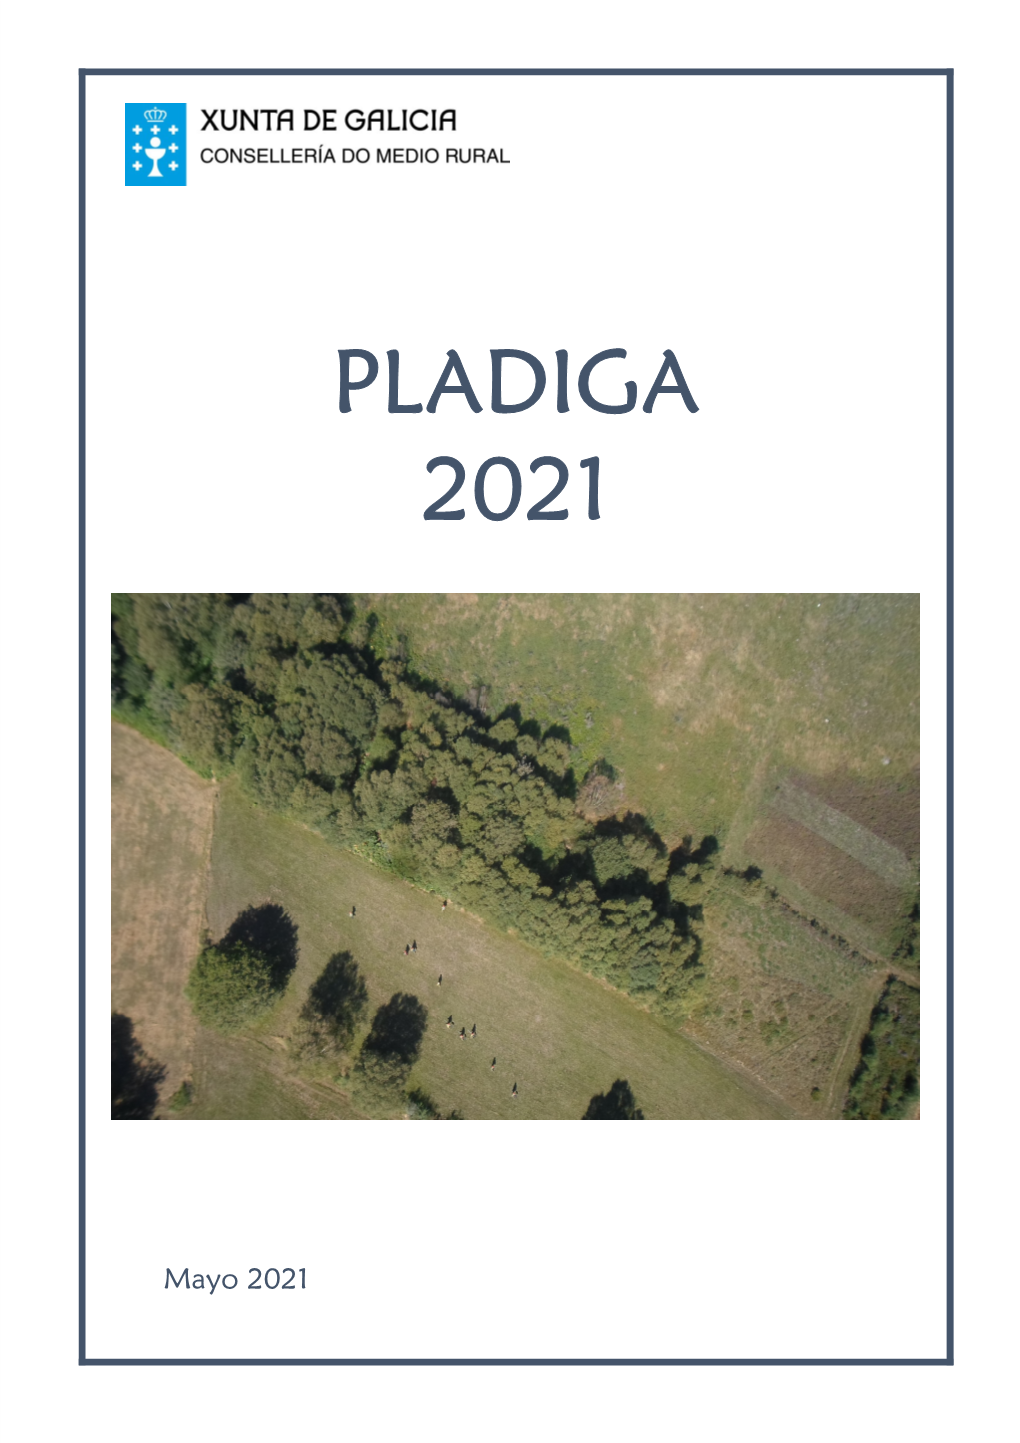 Pladiga 2021